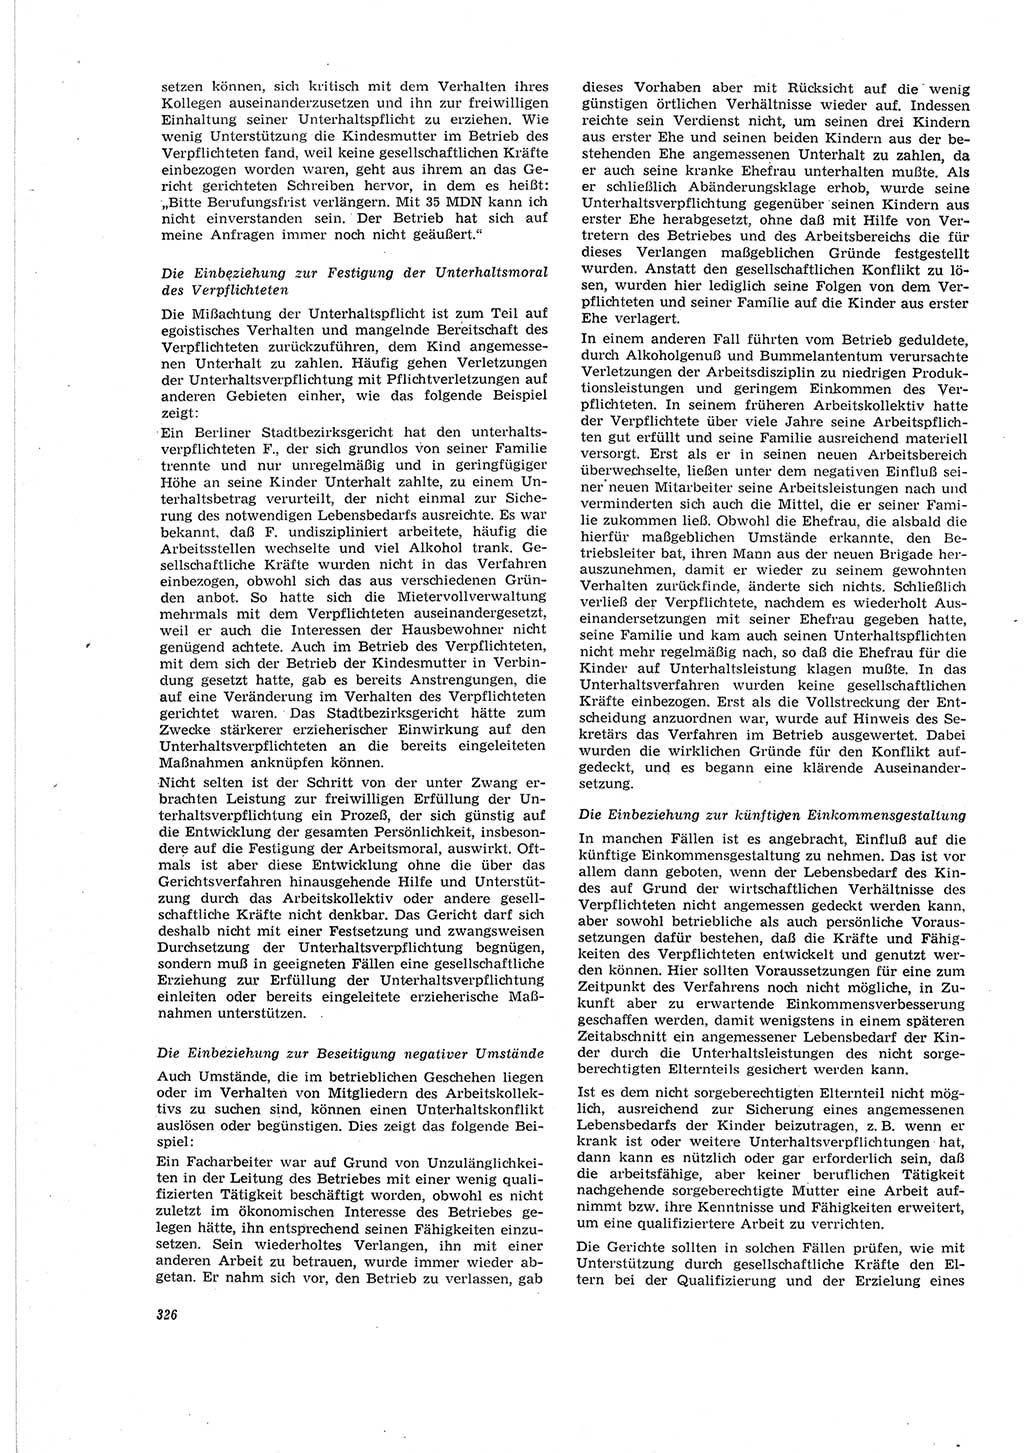 Neue Justiz (NJ), Zeitschrift für Recht und Rechtswissenschaft [Deutsche Demokratische Republik (DDR)], 19. Jahrgang 1965, Seite 326 (NJ DDR 1965, S. 326)